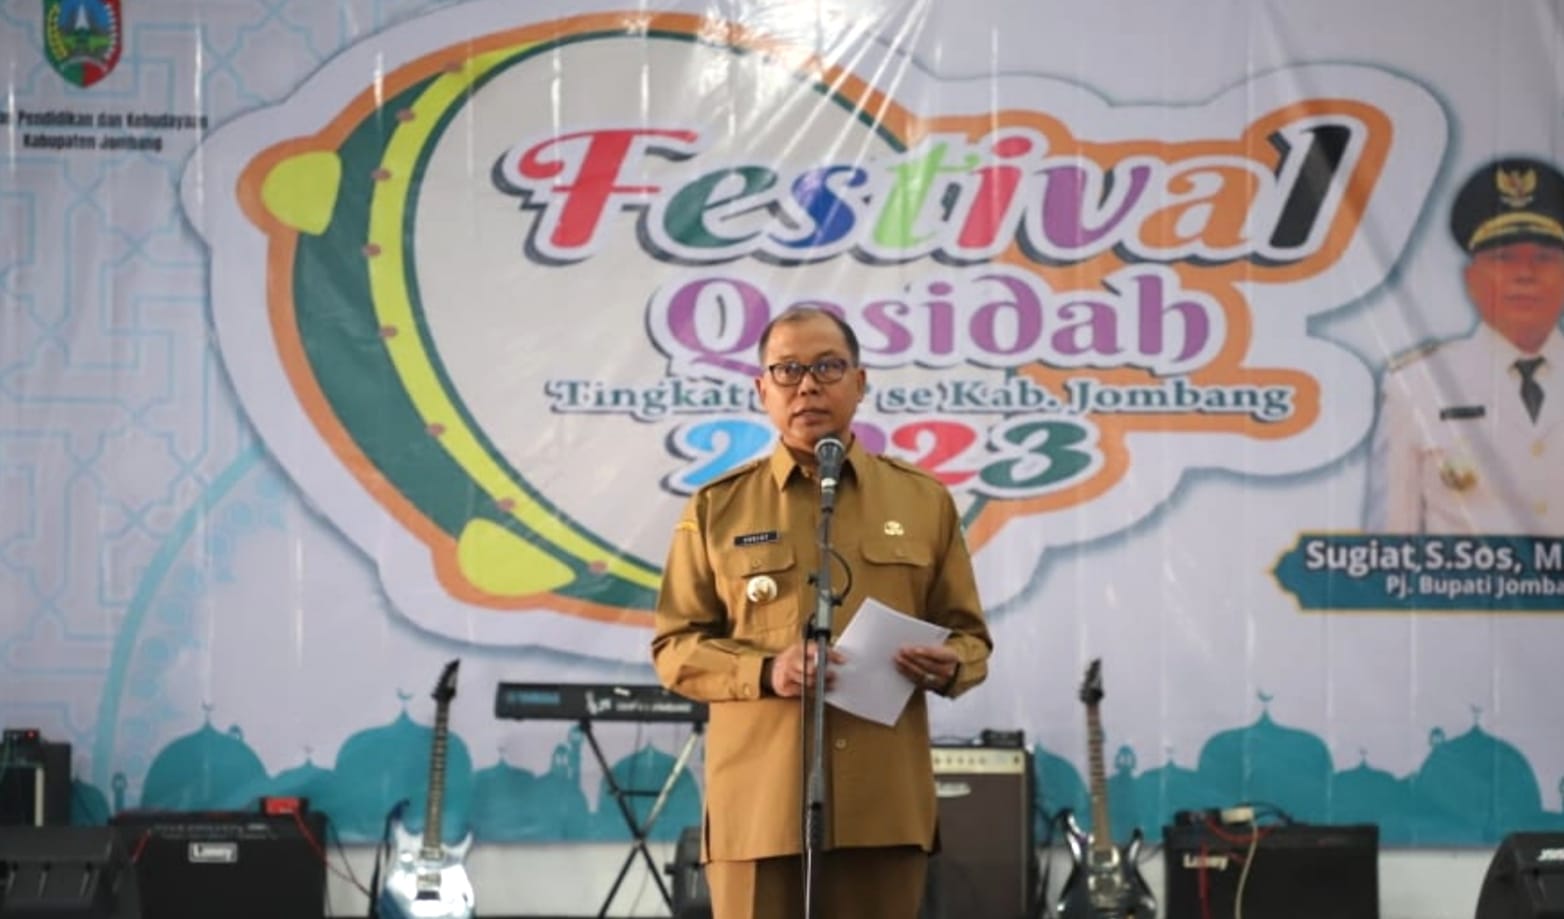 Buka Festival Qosidah, Begini Pesan Pj Bupati Jombang